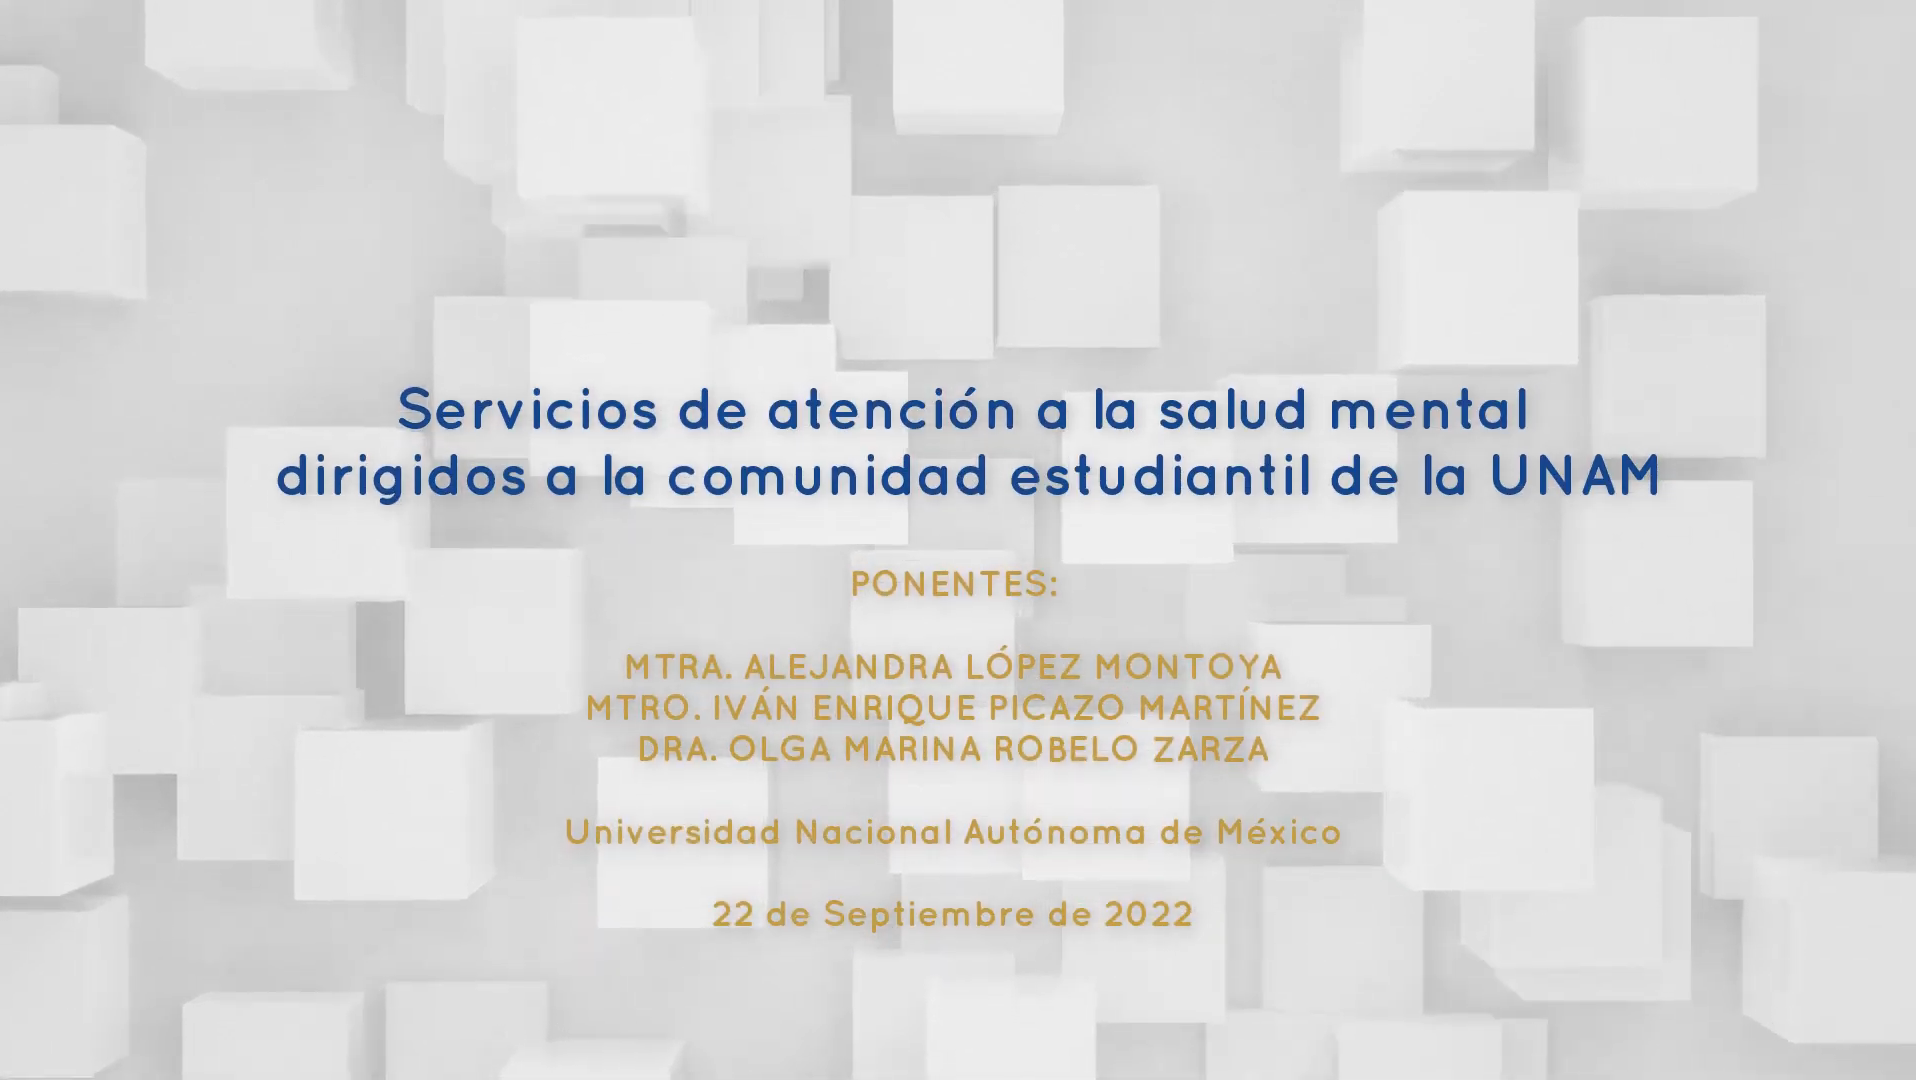 Servicios de atención a la salud mental dirigidos a la comunidad estudiantil de la UNAM